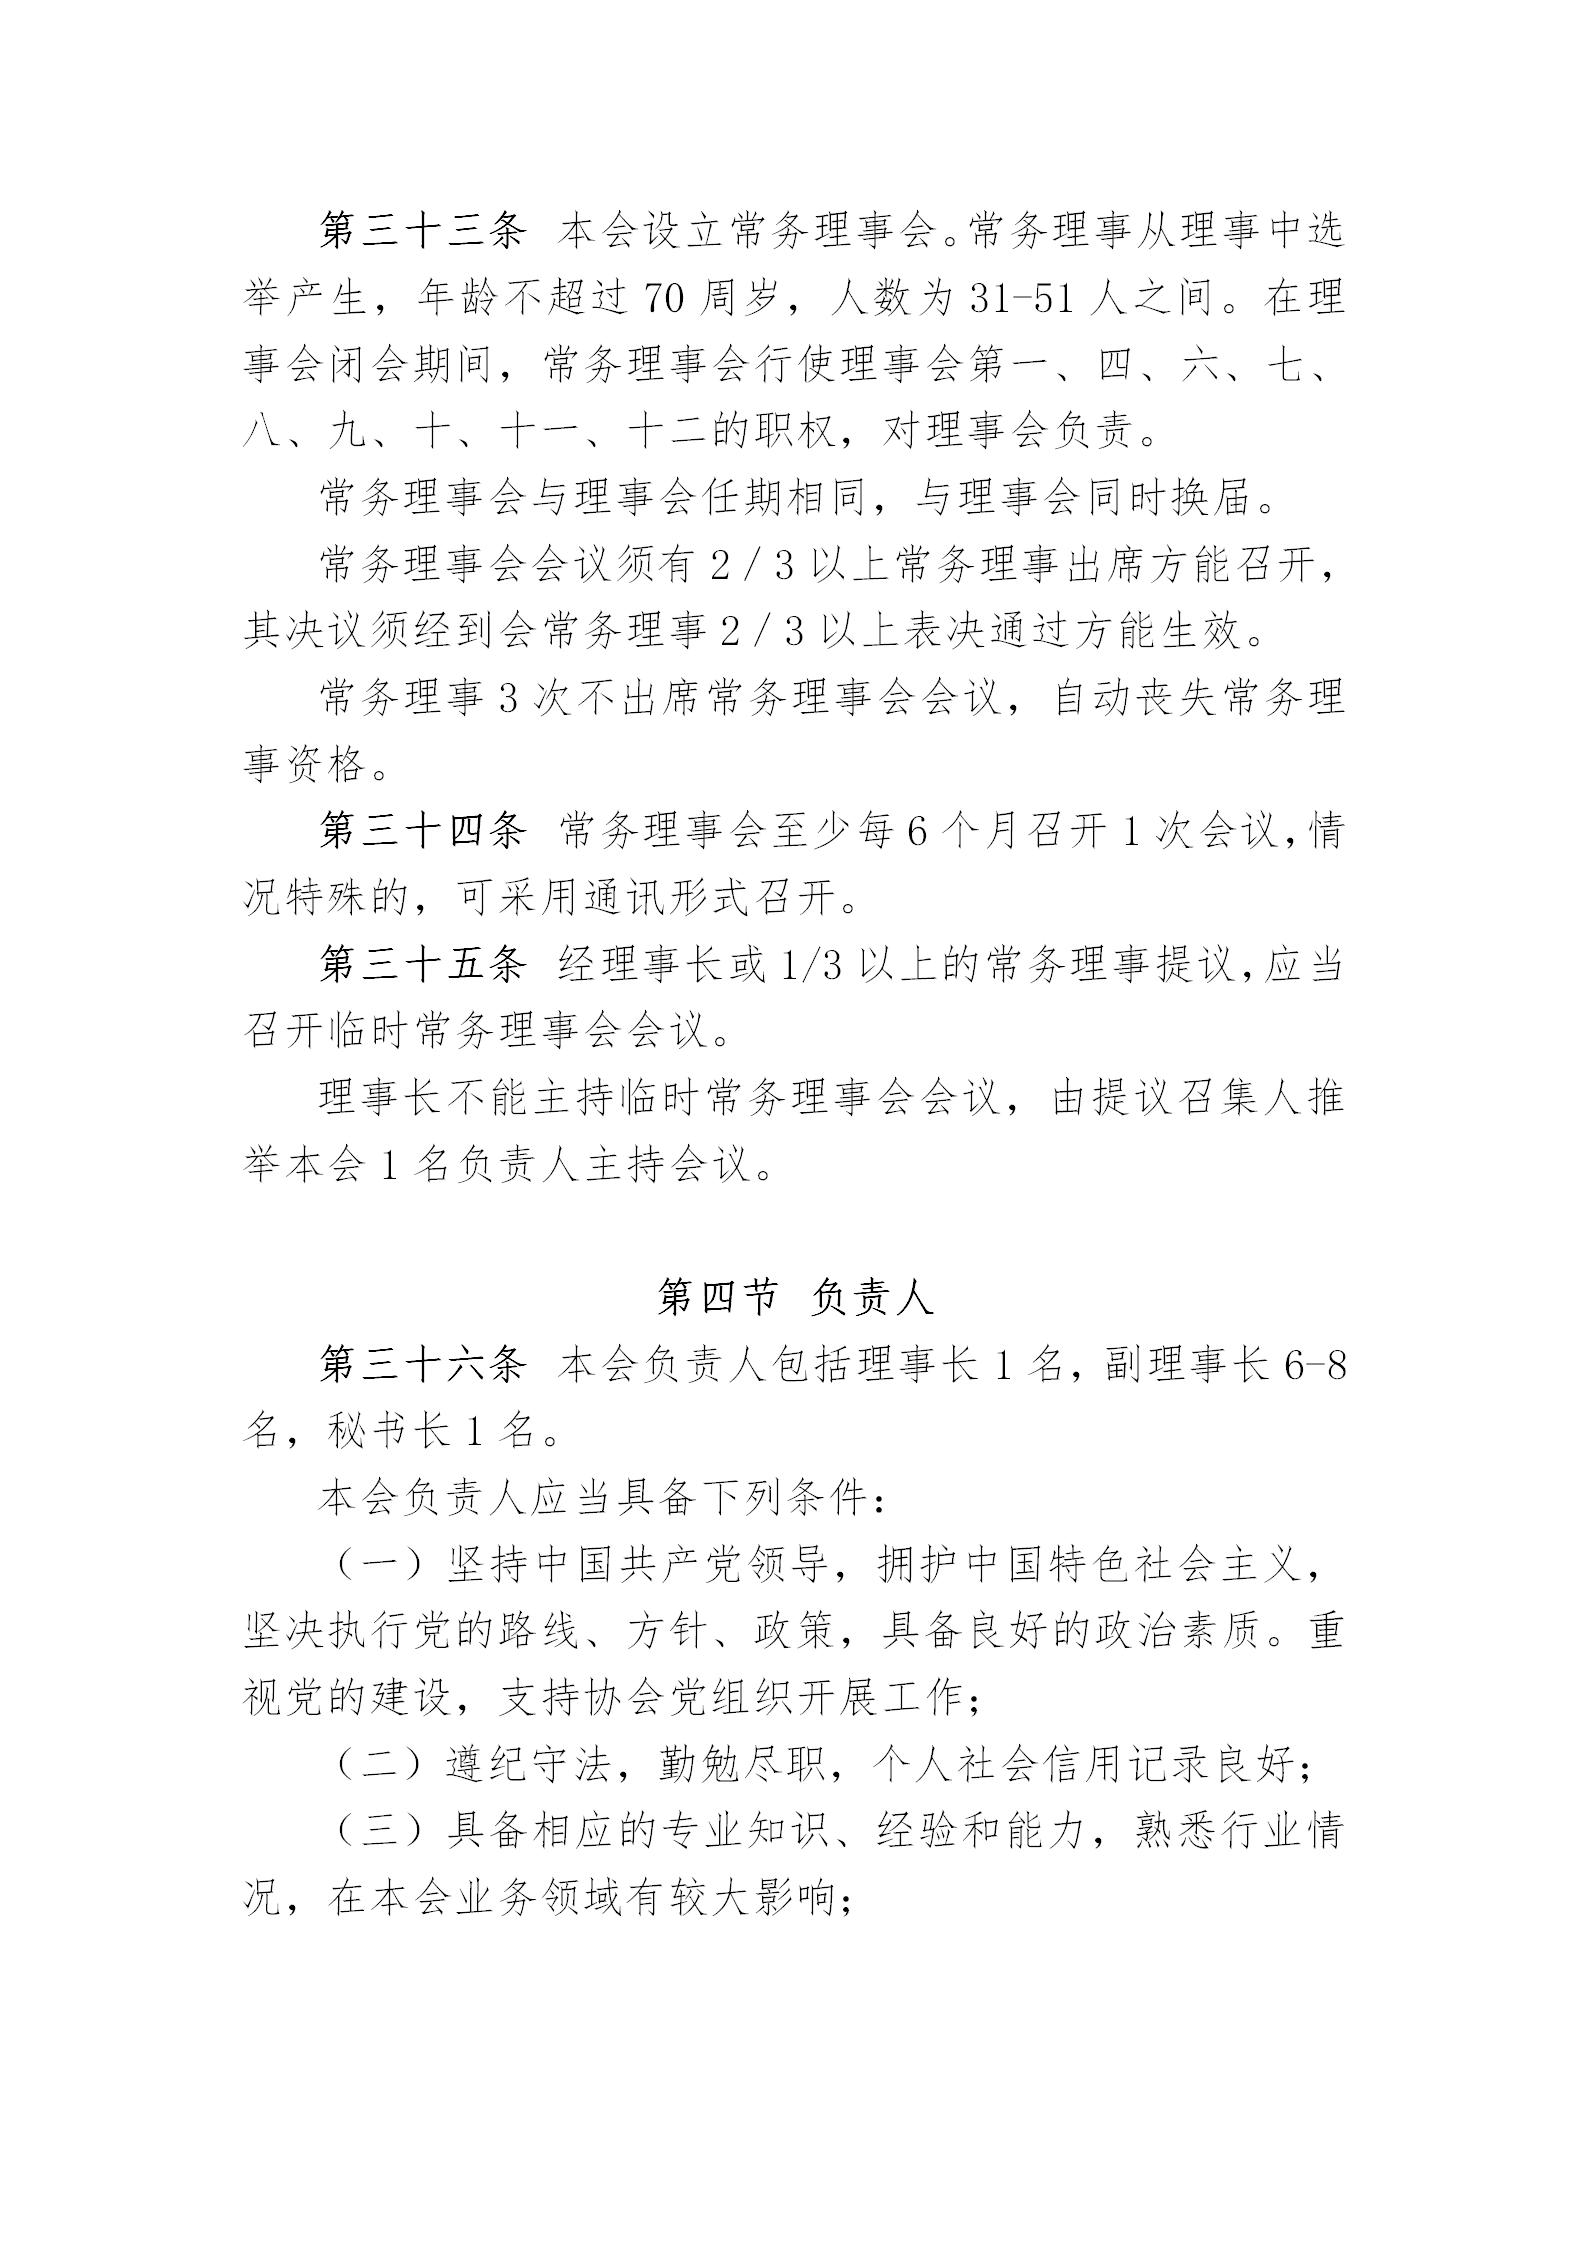 中国演艺设备技术协会章程(定稿)_10.jpg